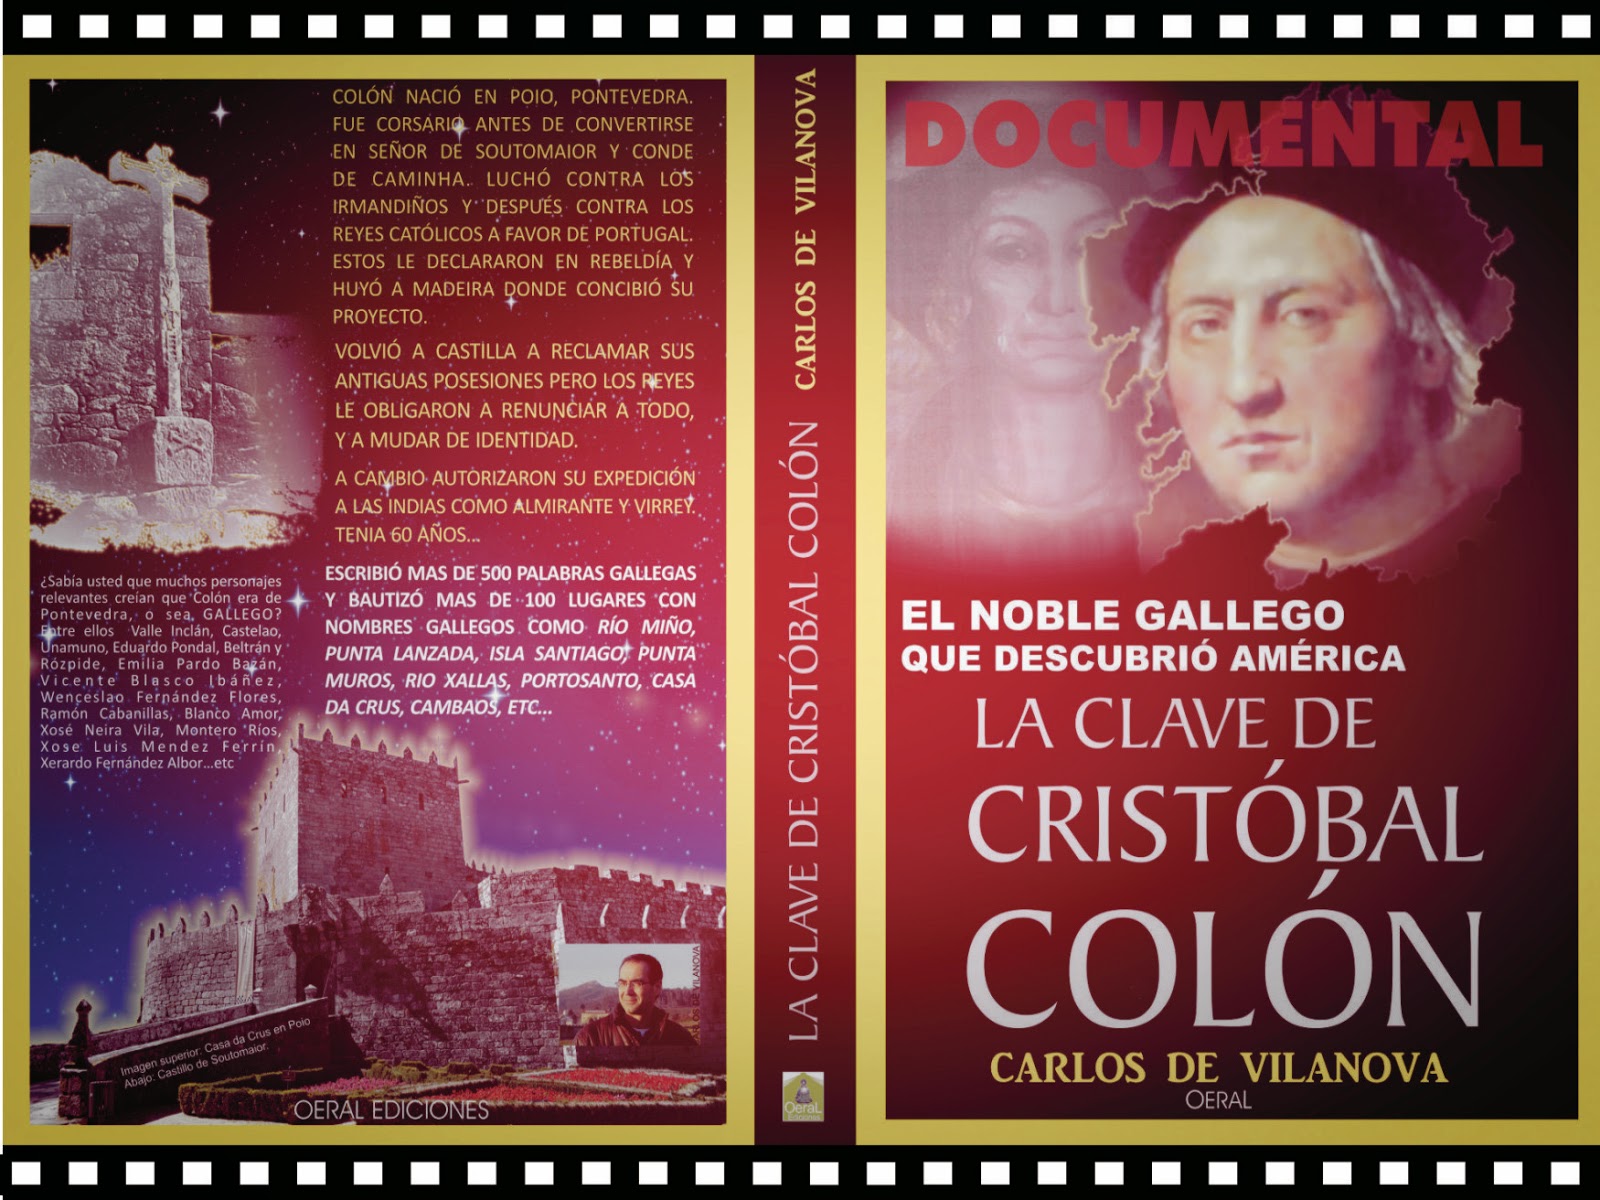 La clave de Cristóbal Colón, el noble gallego que descubrió América